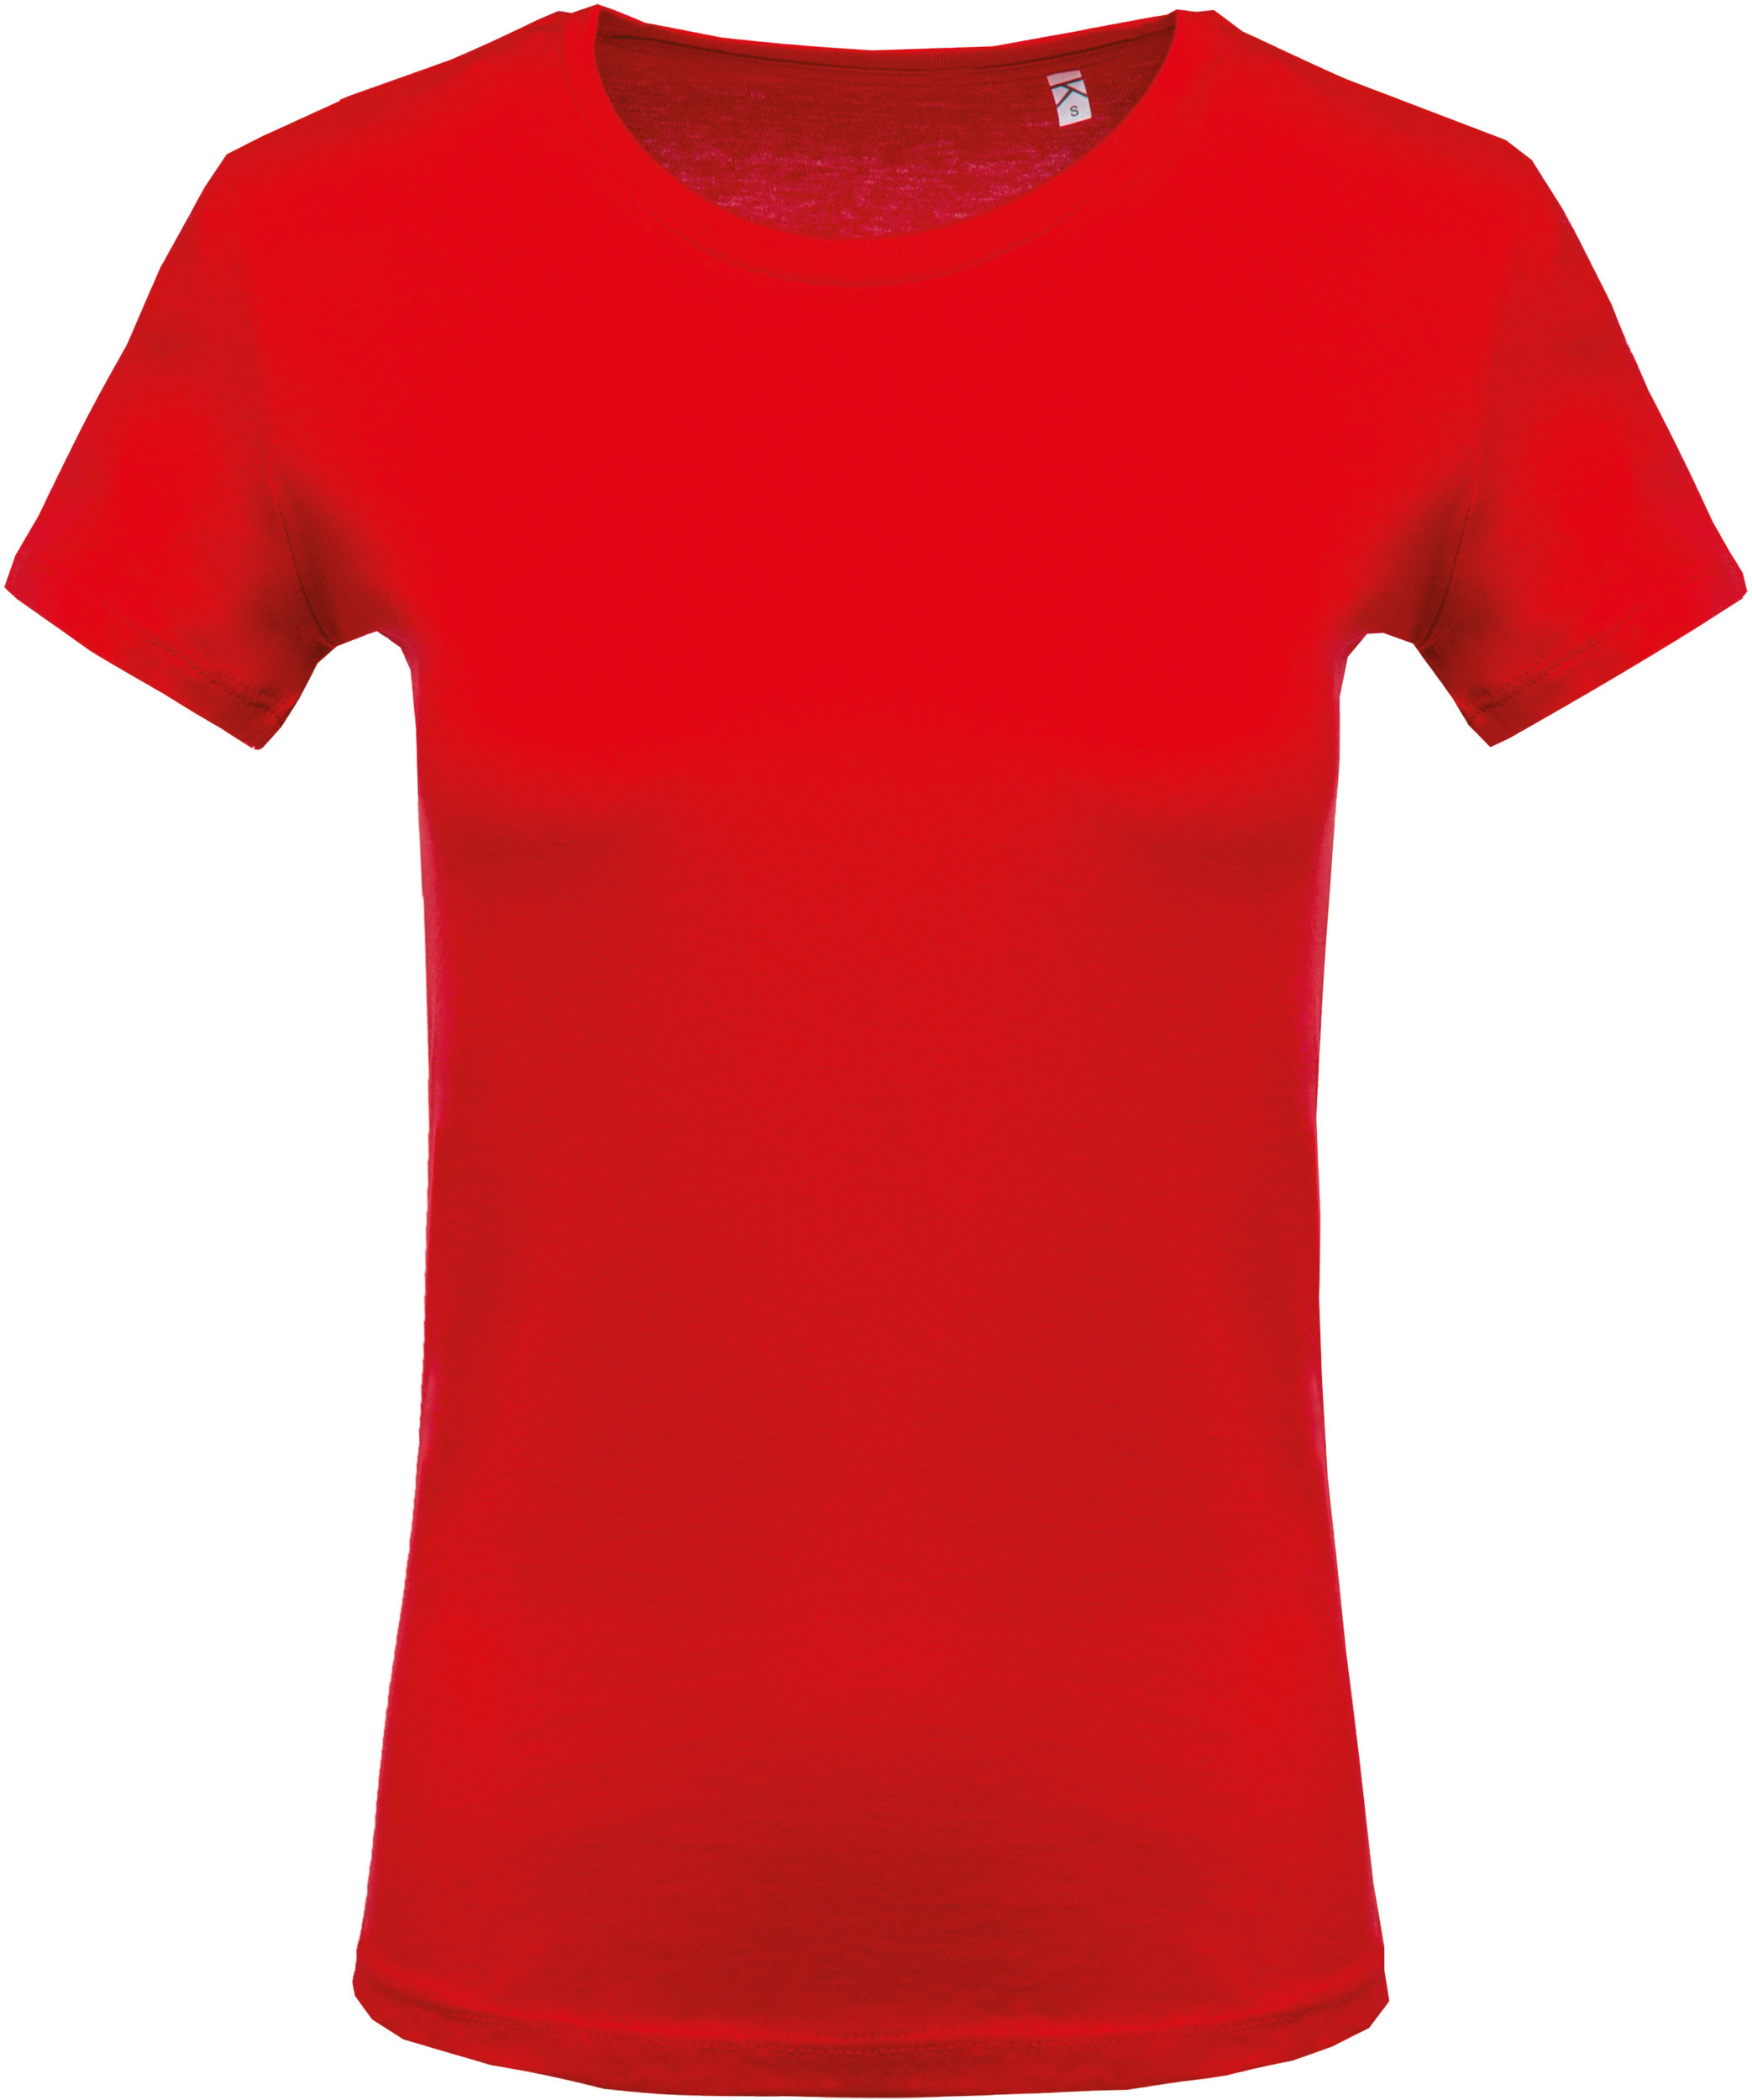 Camiseta con cuello redondo y manga corta de mujer